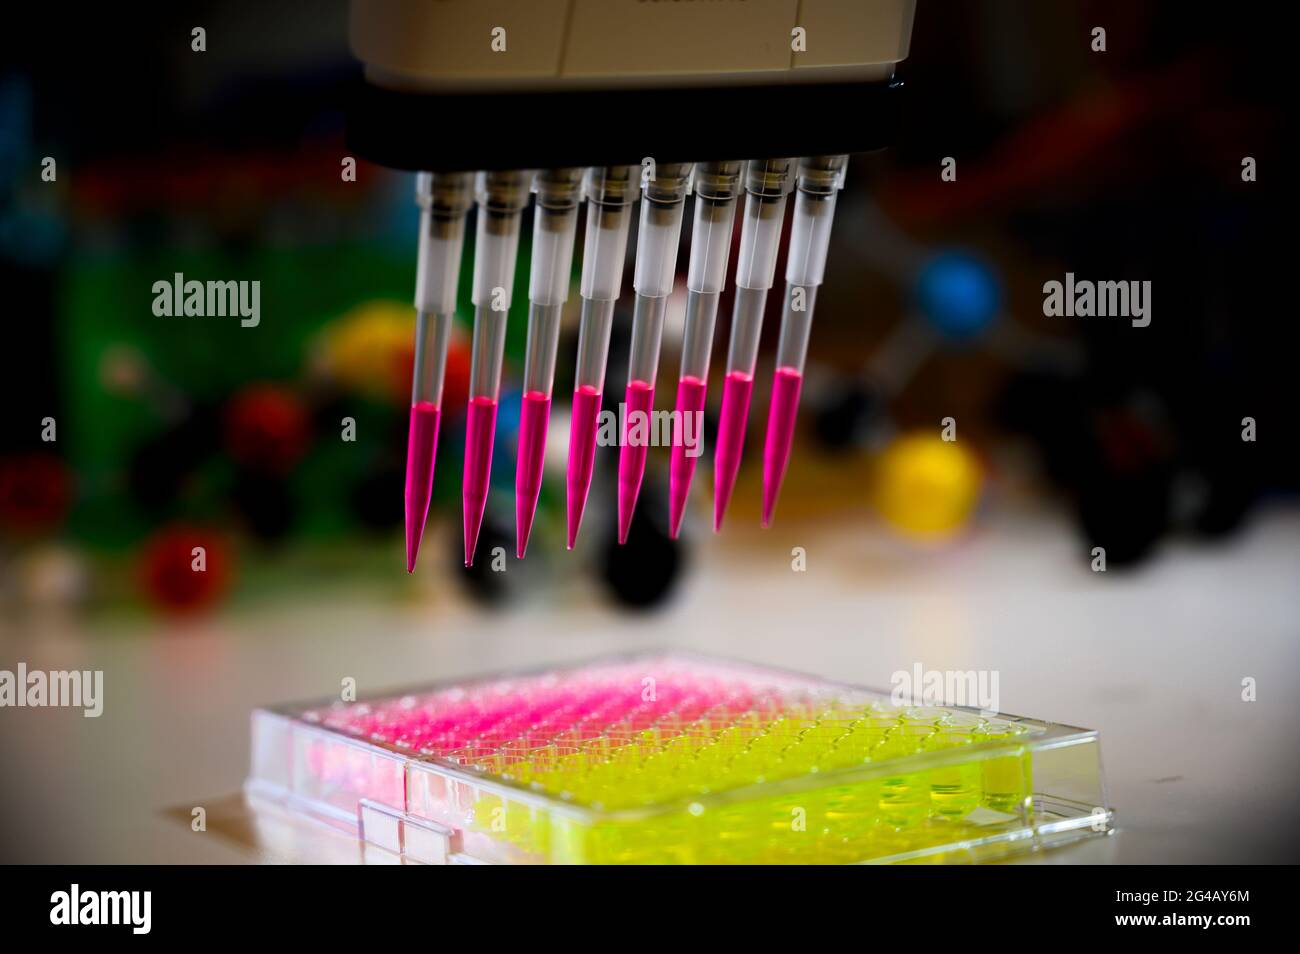 Pipetta multicanale che preleva la soluzione di colore rosa dalla piastra a 96 pozzetti per la ricerca clinica con composti modello in background in un laboratorio chimico Foto Stock